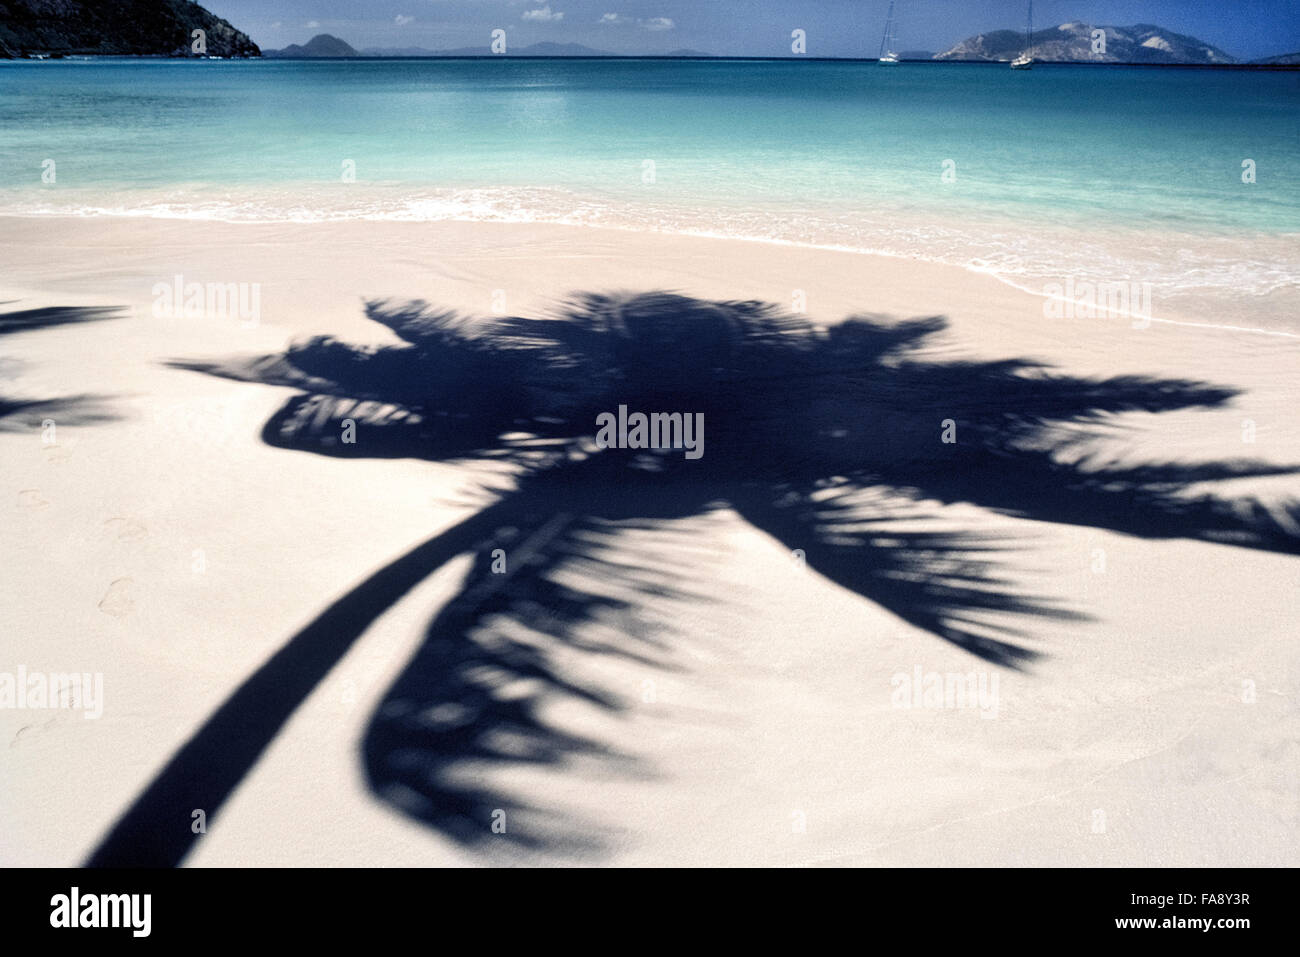 Eine Palme wirft seinen Schatten auf einem weißen Sandstrand, der durch das azurblaue Meer der Karibik in Cane Garden Bay auf Tortola, von den British Virgin Islands größte ein Überseegebiet des Vereinigten Königreichs umspült ist. Die BVIs genannt, sind die Inseln beliebtesten Urlaubsziele für Sonnenanbeter, Sailboaters und Angler. Stockfoto